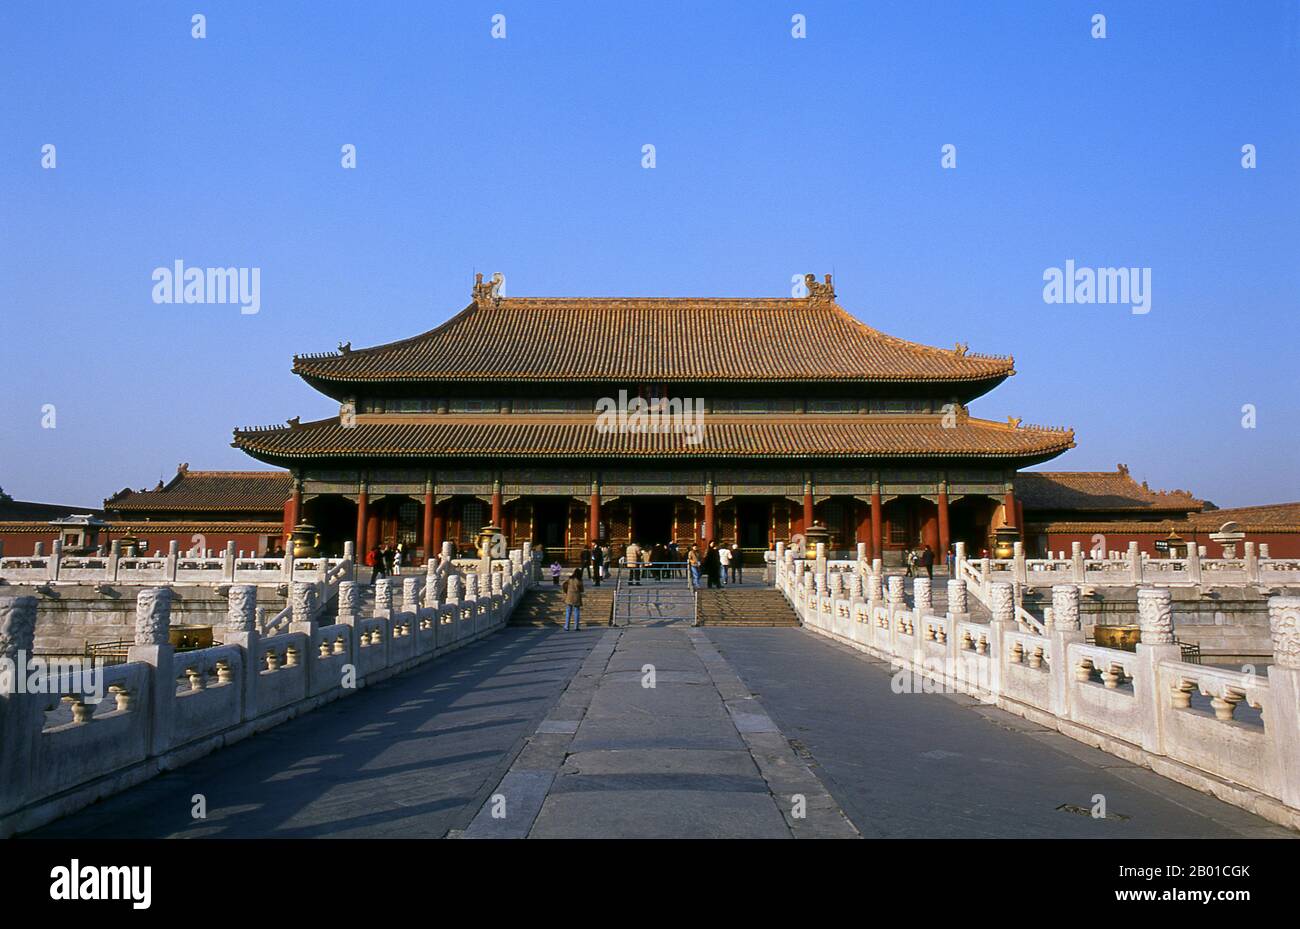 Cina: Il Palazzo di purezza celeste (Palazzo Qianqing), la Città Proibita (Zijin Cheng), Pechino. Il Palazzo di purezza celeste, o Palazzo Qianqing, è la più grande delle tre sale della Corte interna della Città Proibita (le altre due sono la Sala dell'Unione e il Palazzo della tranquillità terrena). Durante la dinastia Qing, il palazzo servì come sala del pubblico dell'Imperatore, dove tenne il consiglio con il Gran consiglio. La Città Proibita, costruita tra il 1406 e il 1420, servì per 500 anni (fino alla fine dell'era imperiale nel 1911) come sede di ogni potere in Cina, il trono del Figlio di Heave Foto Stock